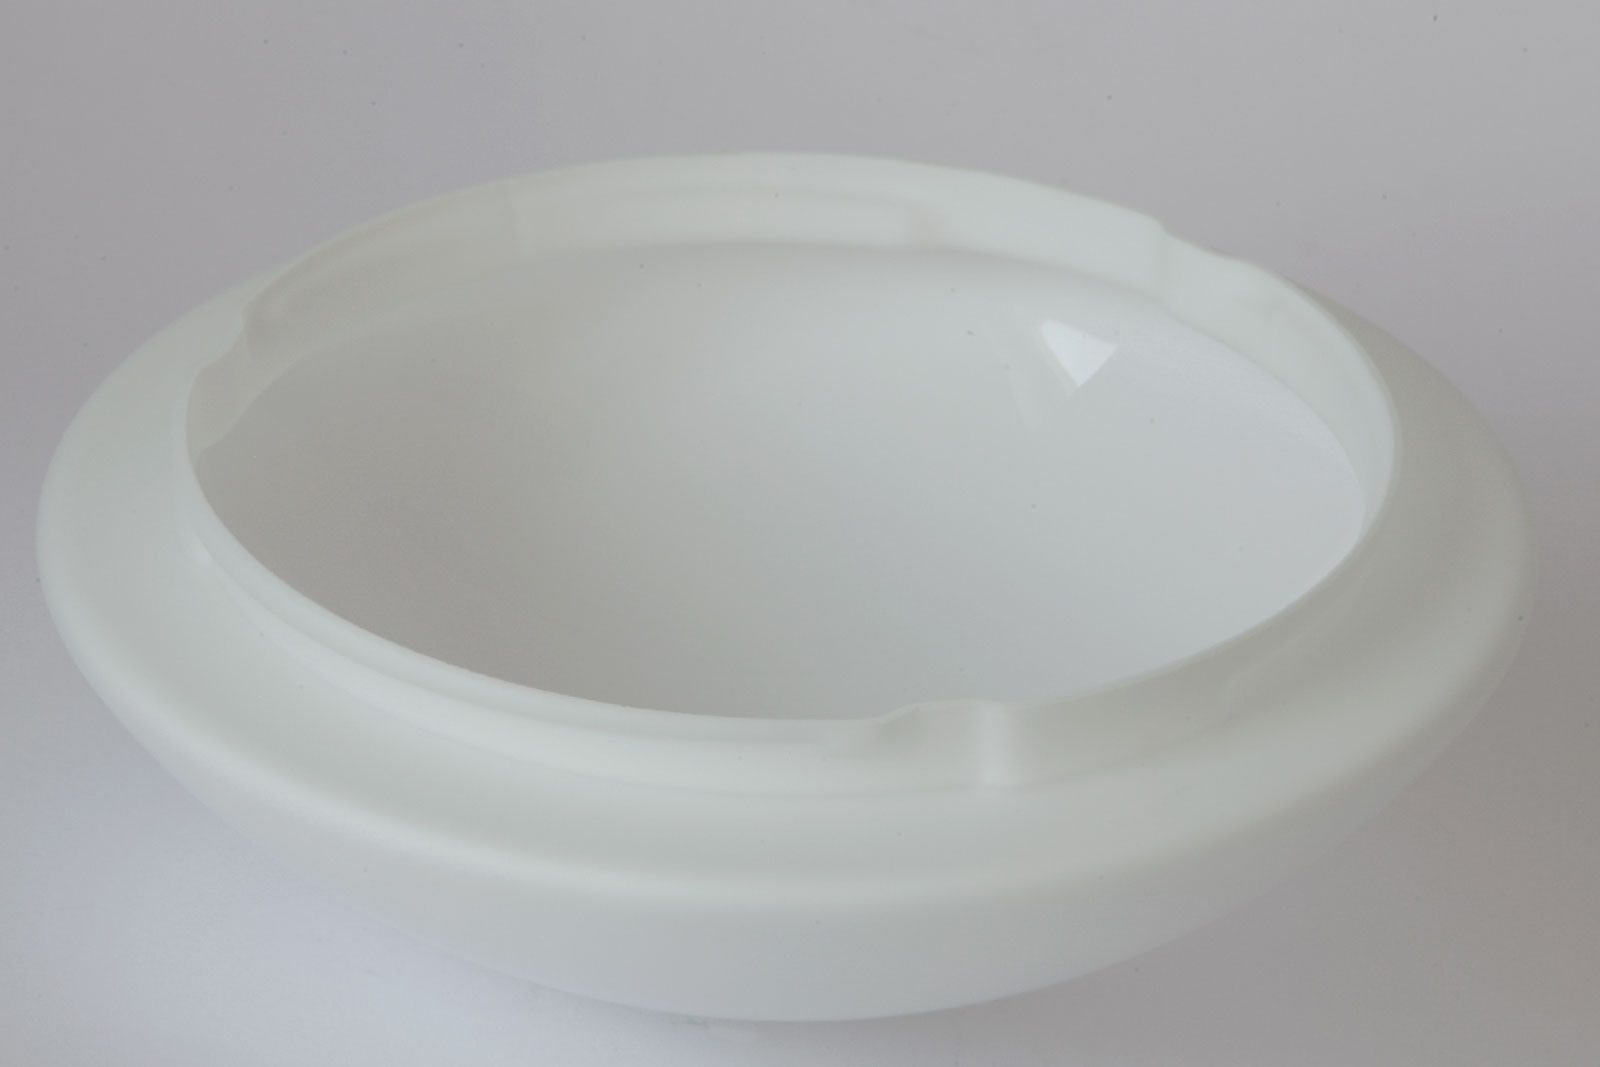 Opalglas-Deckenleuchte mit Ring AURORA R2, Ø 20 bis 42 cm: Außen samtig-mattes Triplex-Opalglas, Ø 30 cm mit Bajonetthalterung